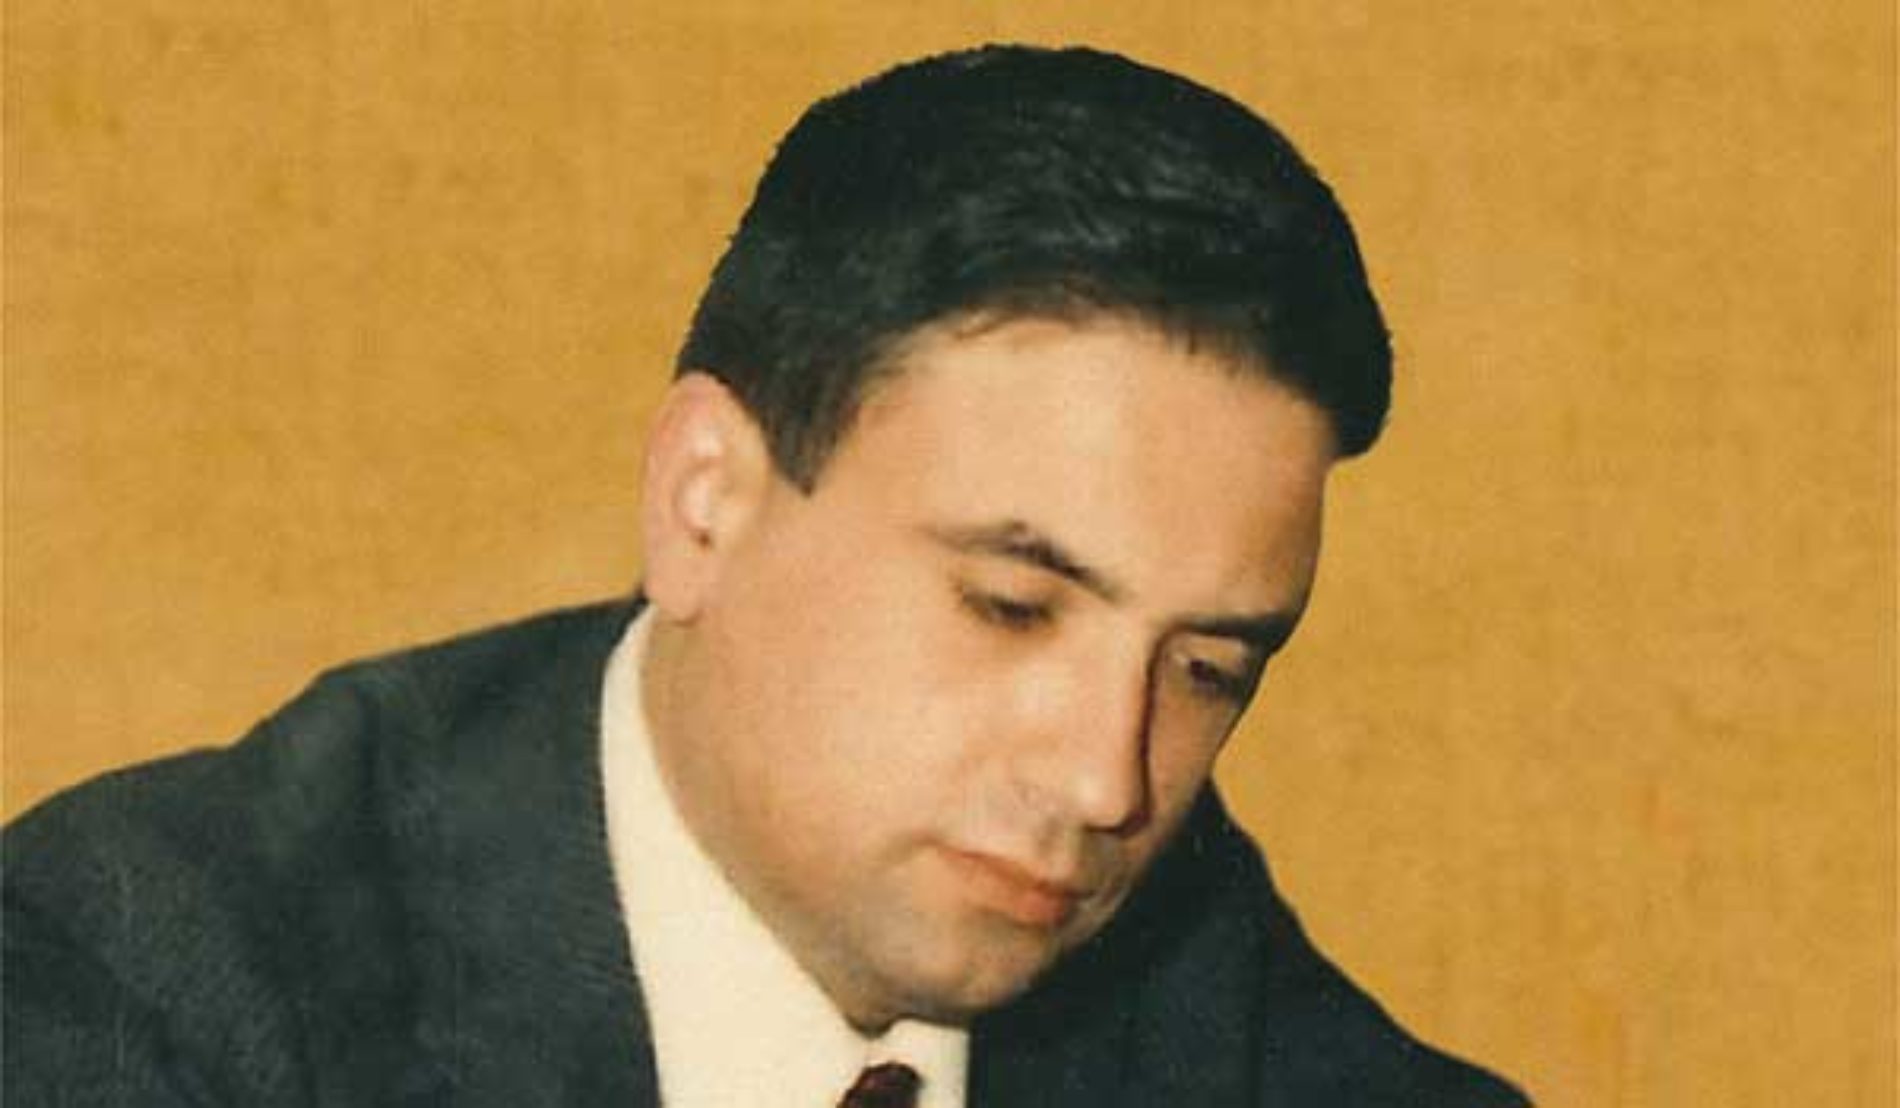 21 settembre 1990: il giudice Rosario Livatino fu ucciso con armi rubate a Barrafranca